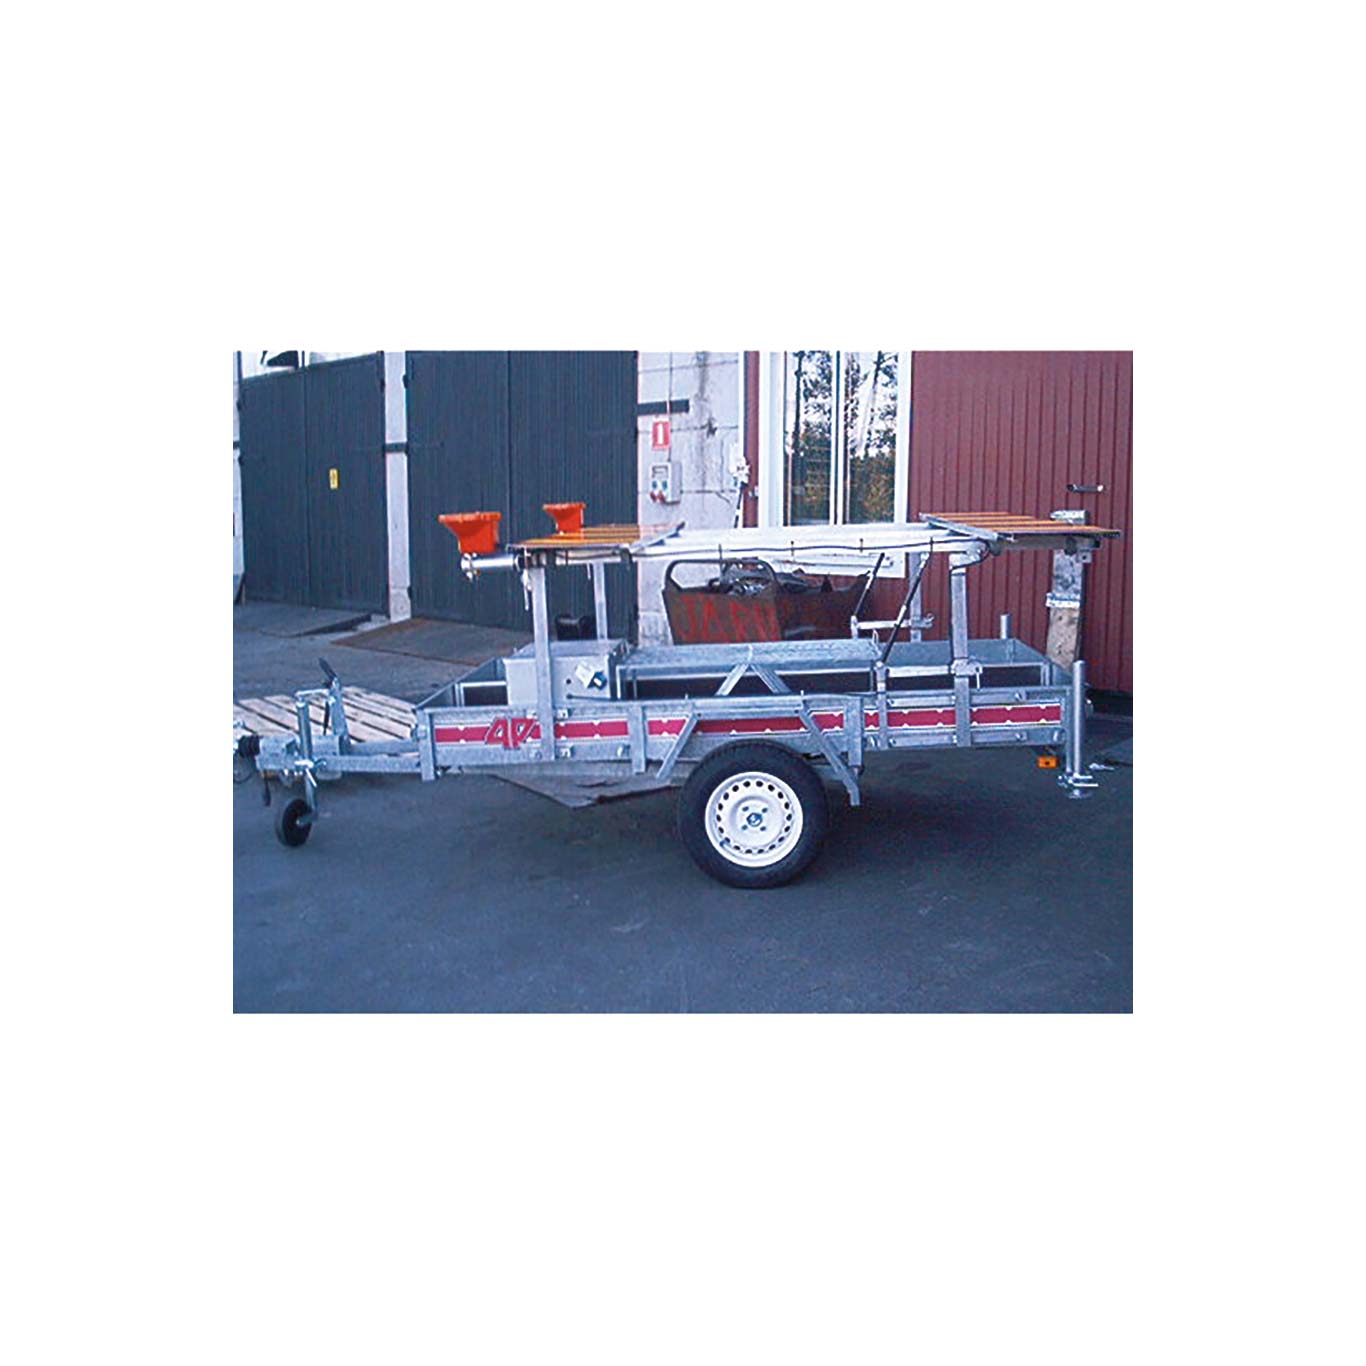 Vägmärkesvagn SOS Vagnen med flak registrerad verktygslåda, laddare, X2-skärmar, ljus